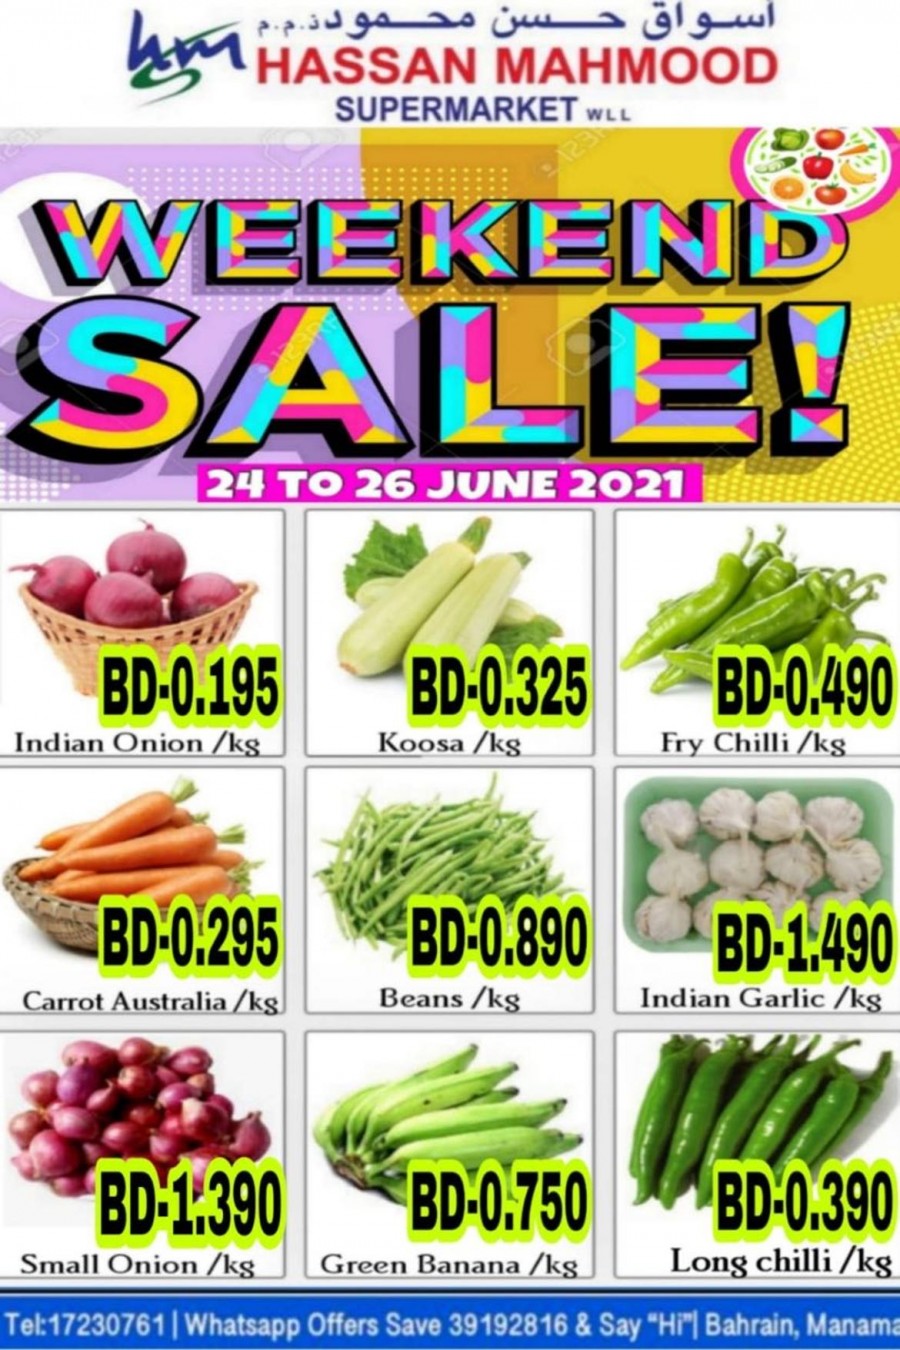 Weekend Super Sale